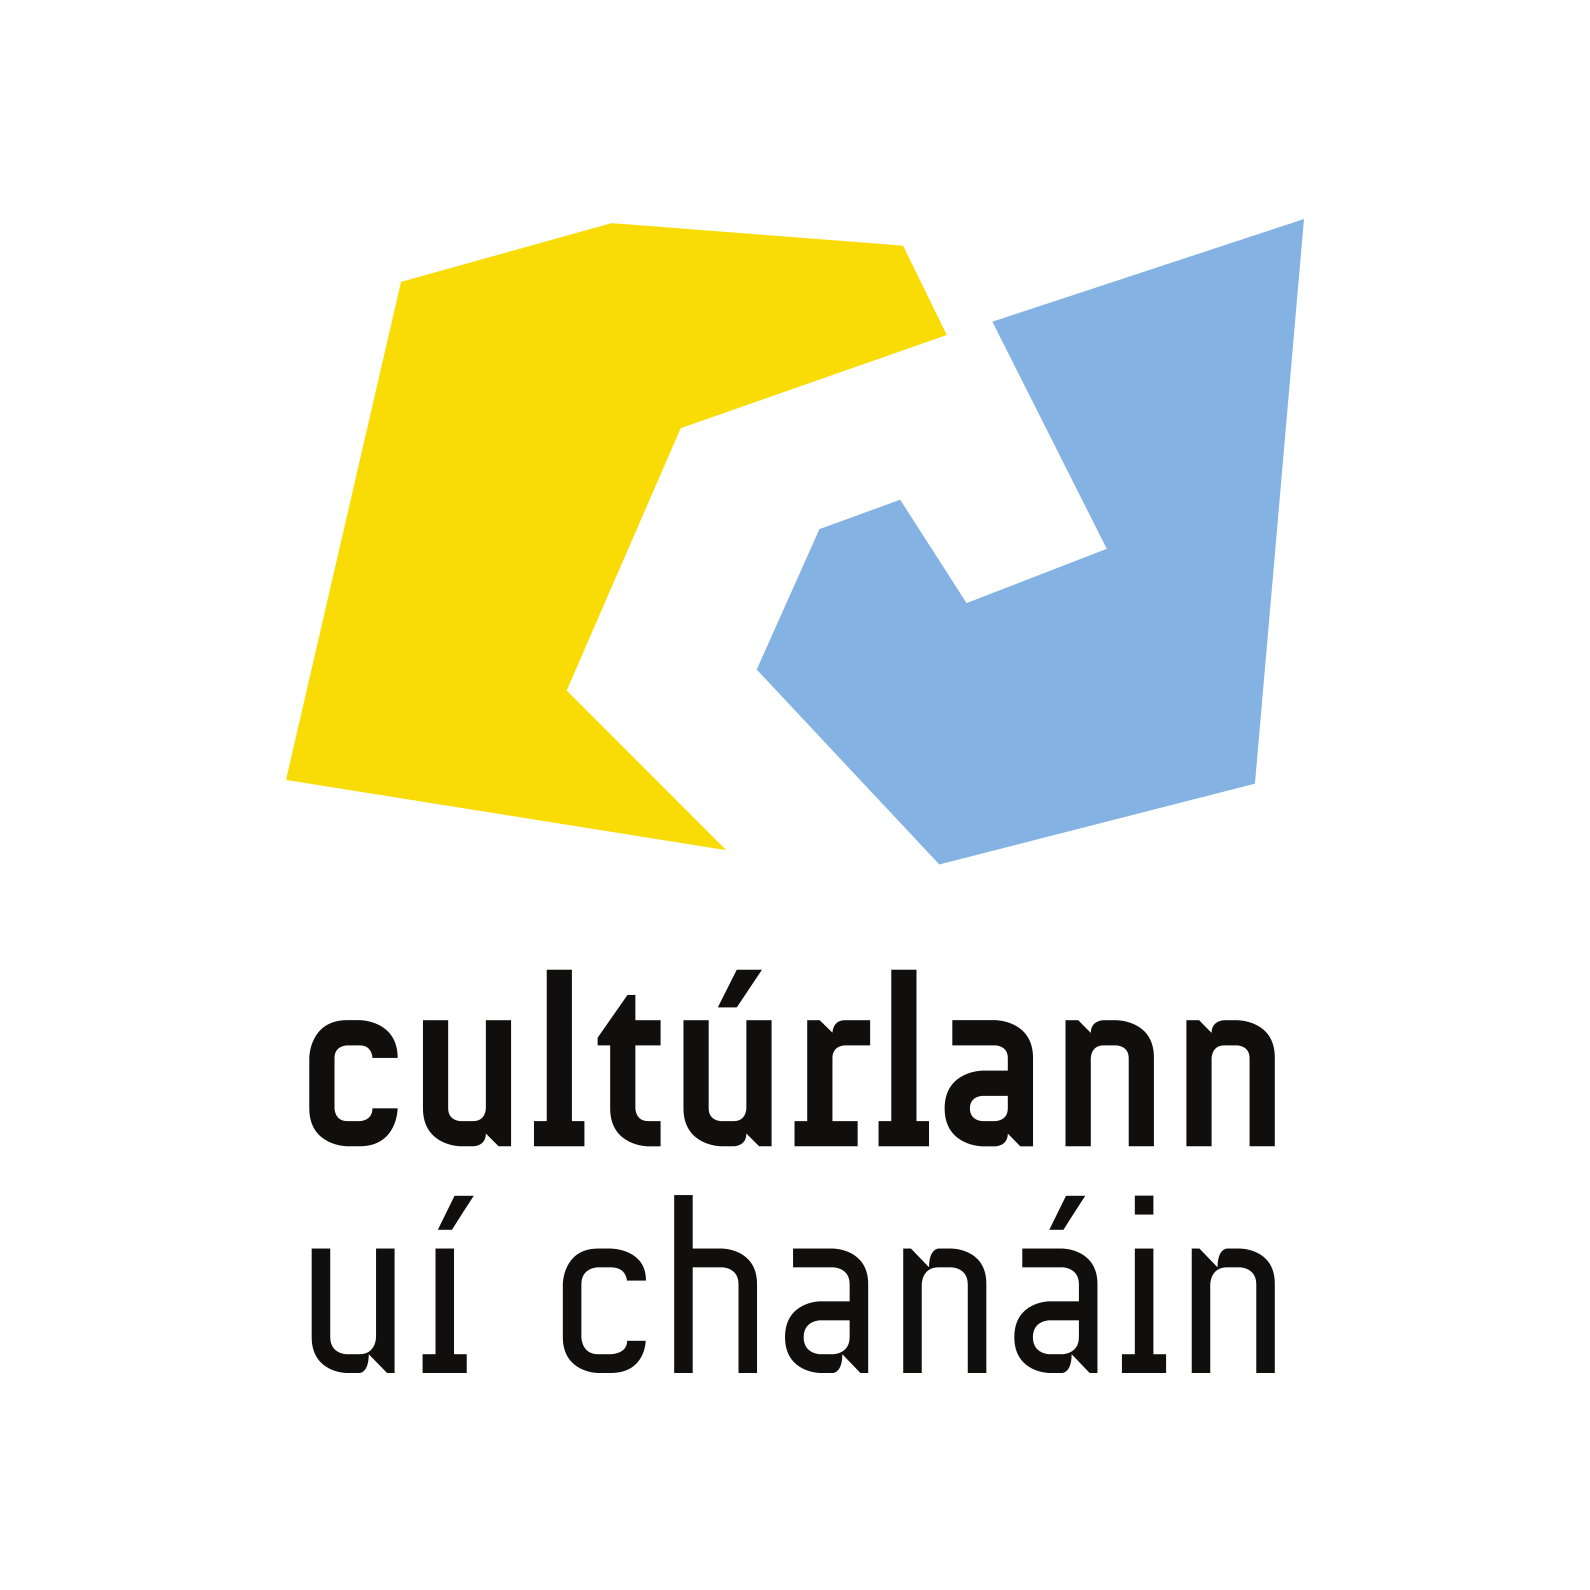 Cultúrlann Uí Chanáin